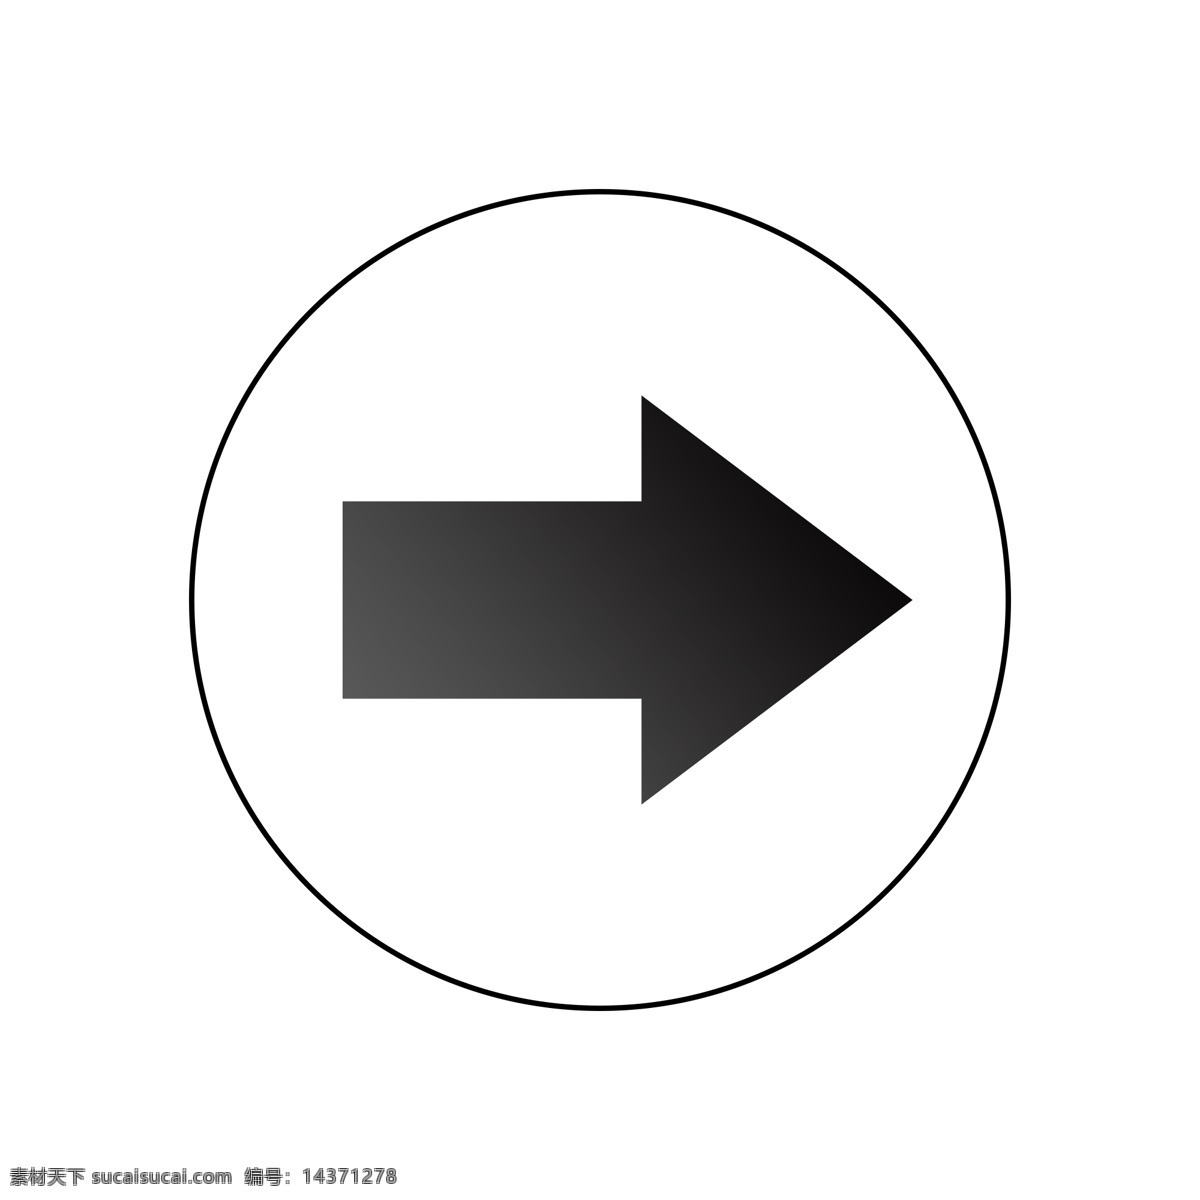 左 圆圈 黑色 箭头 图标 矢量 路标 导向标 黑色箭头 指示箭头 导向牌 指示牌 指示标 引导